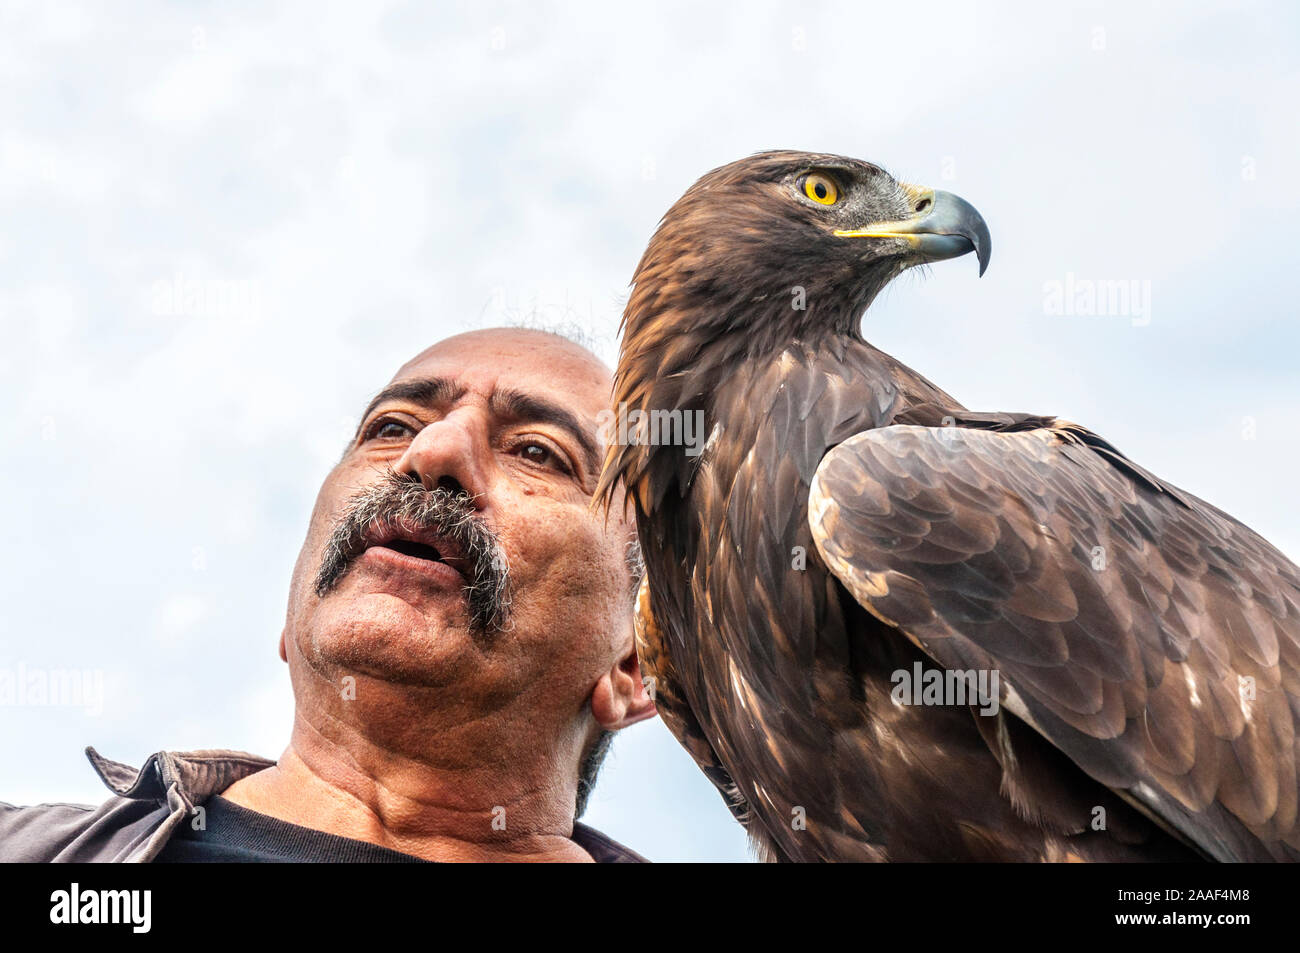 11 août 2018. Pedro Soltani le Bird-Man de Brazoria avec un aigle royal dans Glenties, comté de Donegal, Irlande. Membre fondateur de l'Irlande. Sauvetage Raptor Banque D'Images